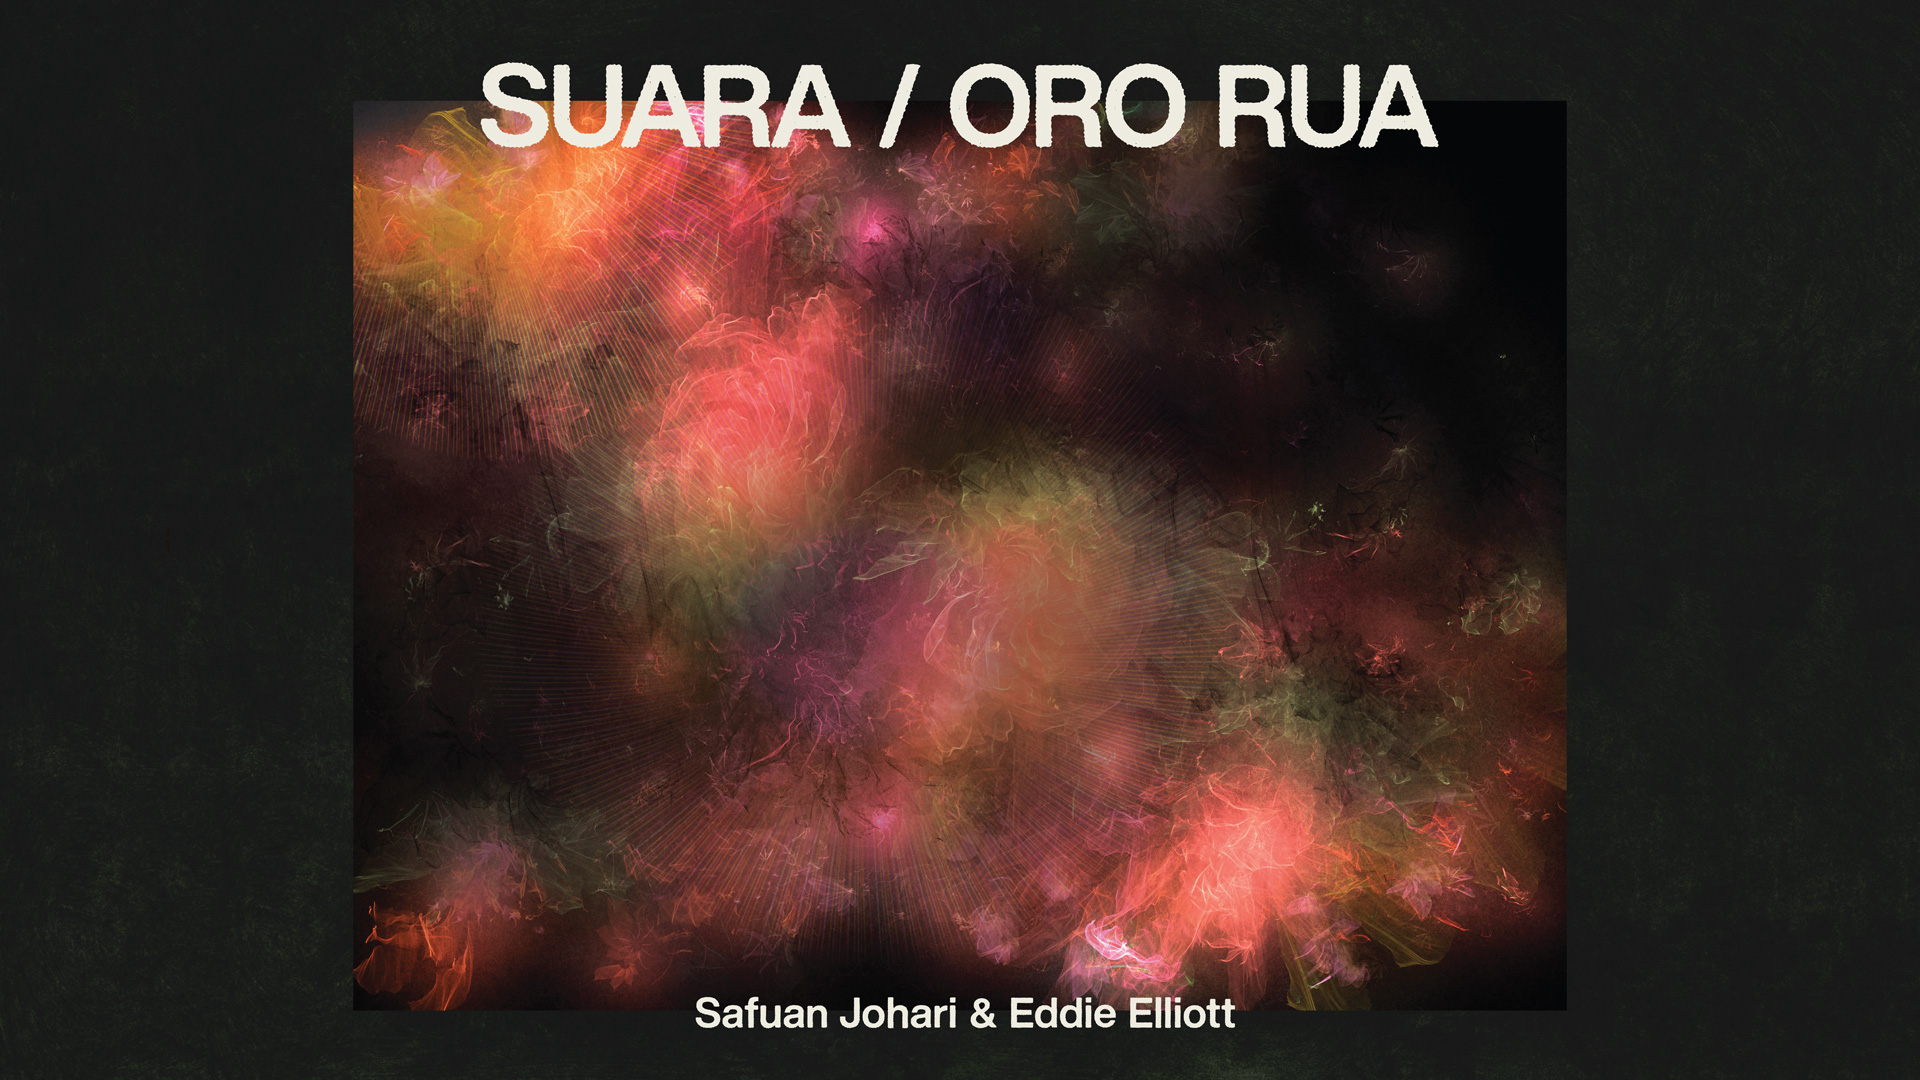 Key visual of SUARA / ORO RUA 